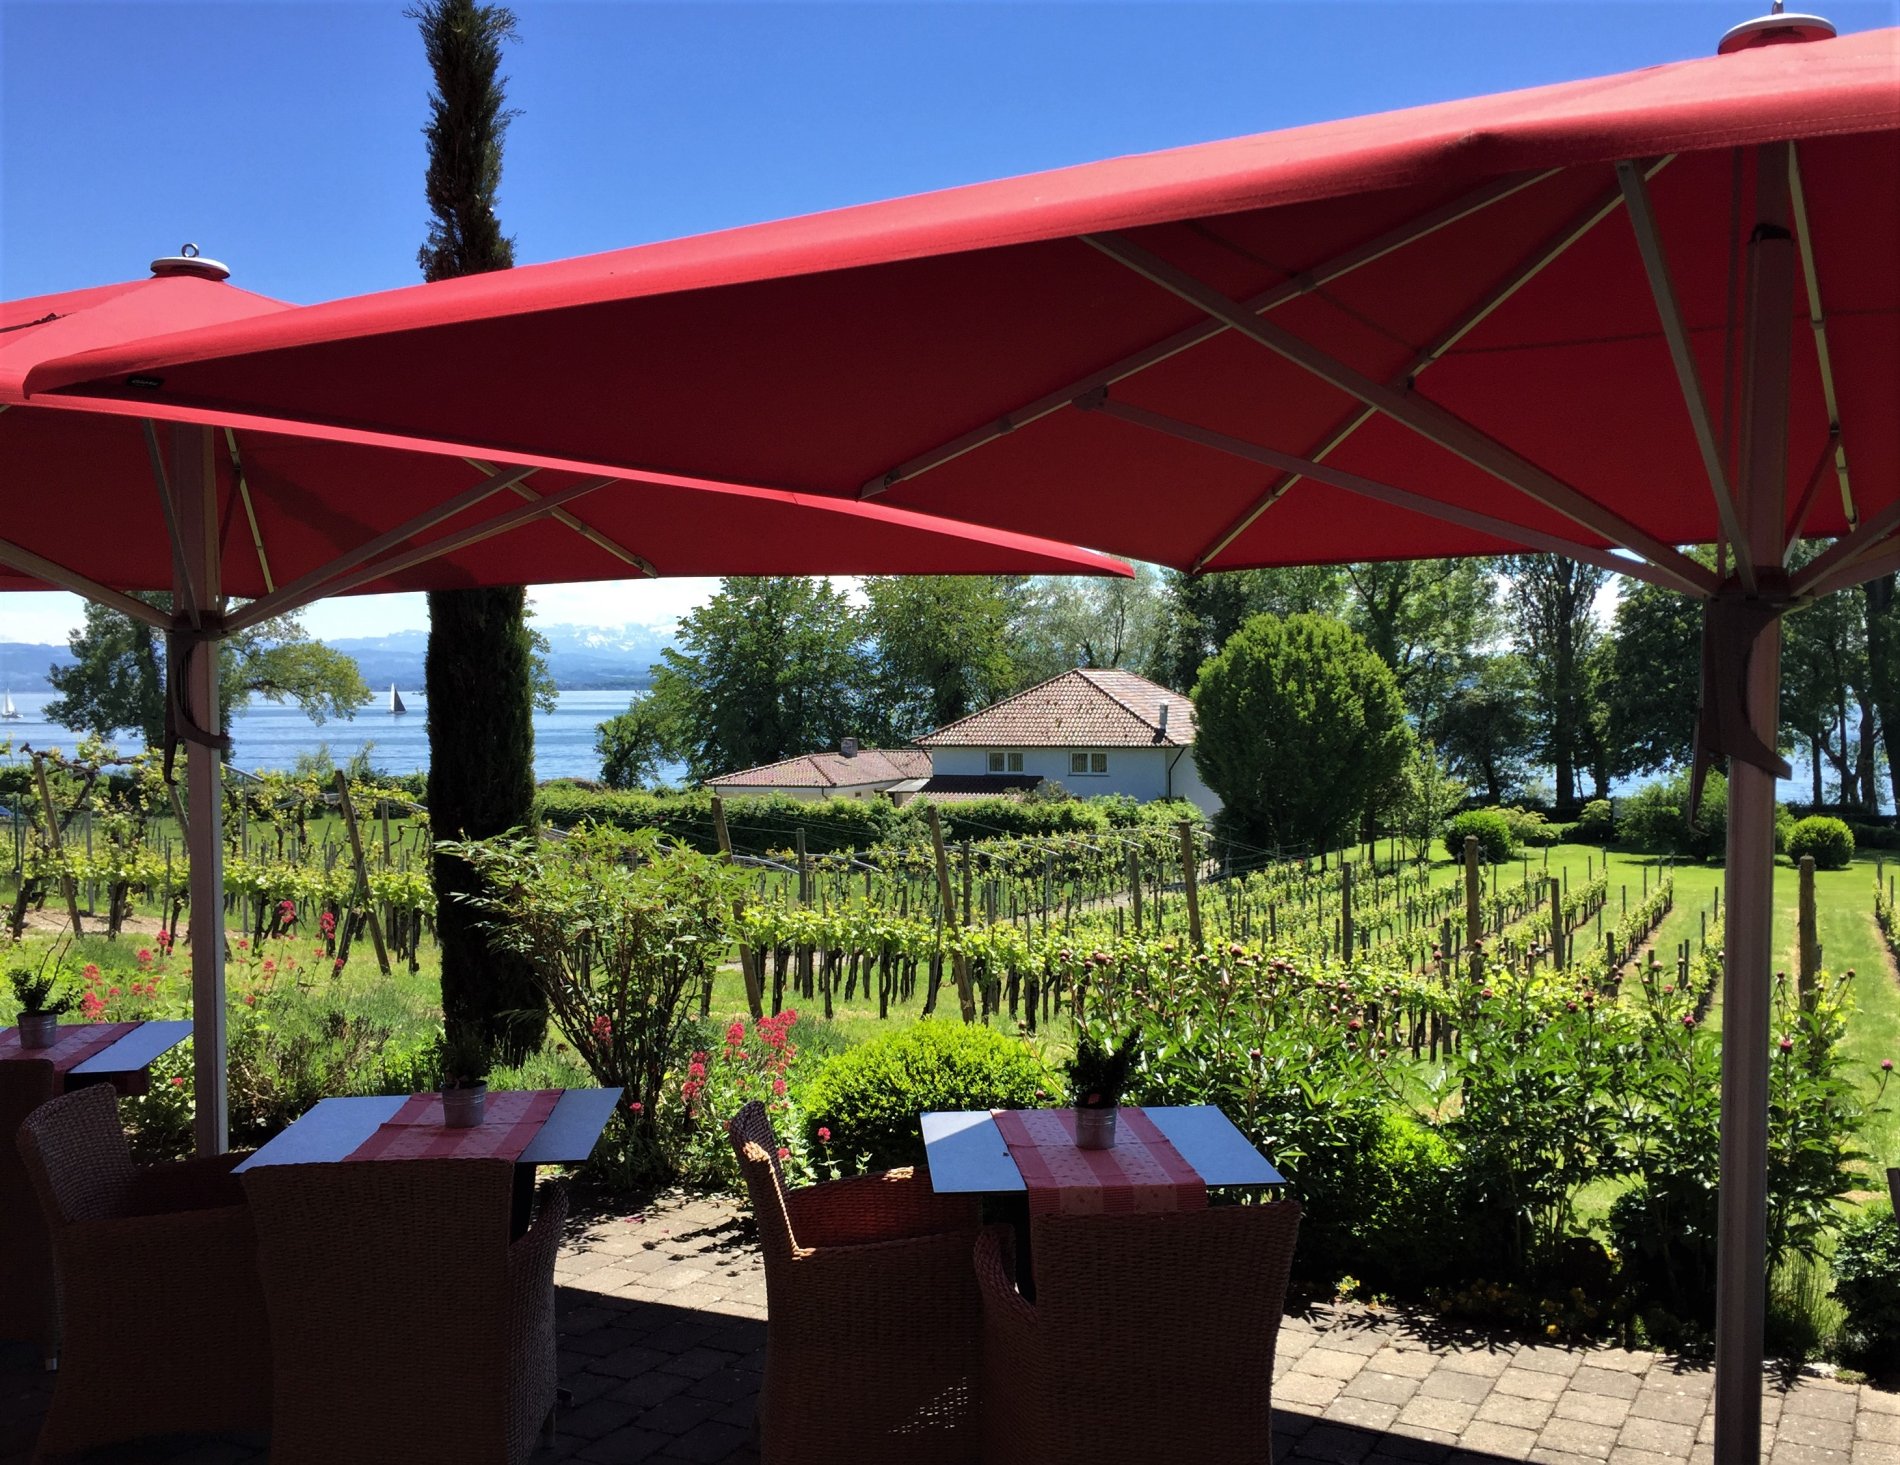 Terrasse mit Tischen und Blick auf Weinreben und den Bodensee